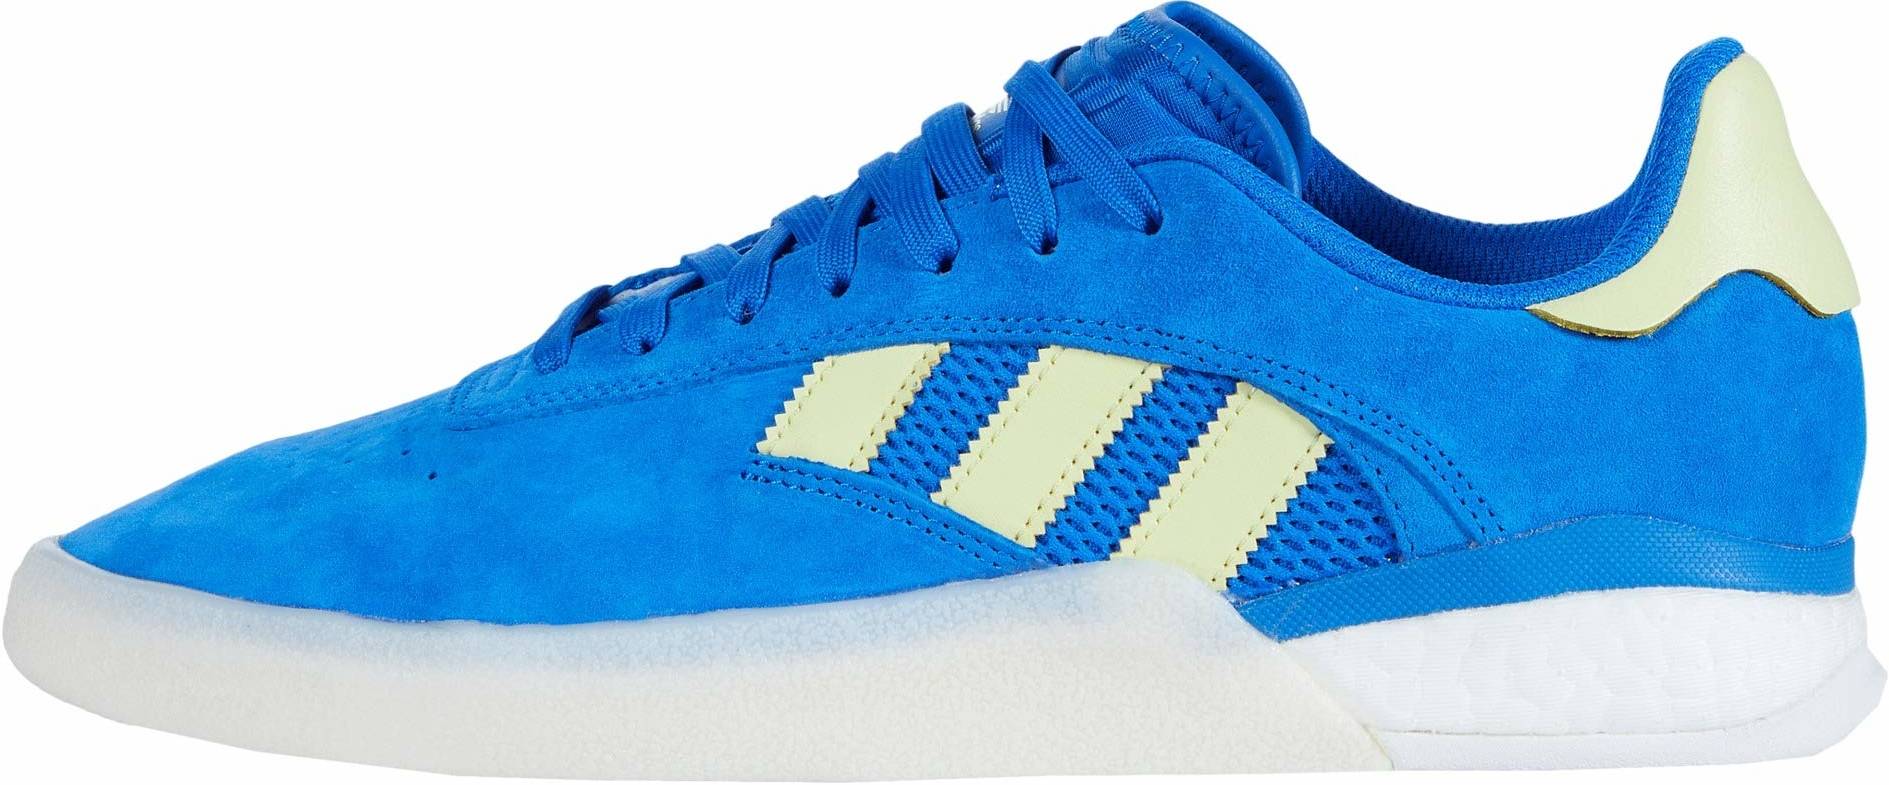 adidas skate shoes blue